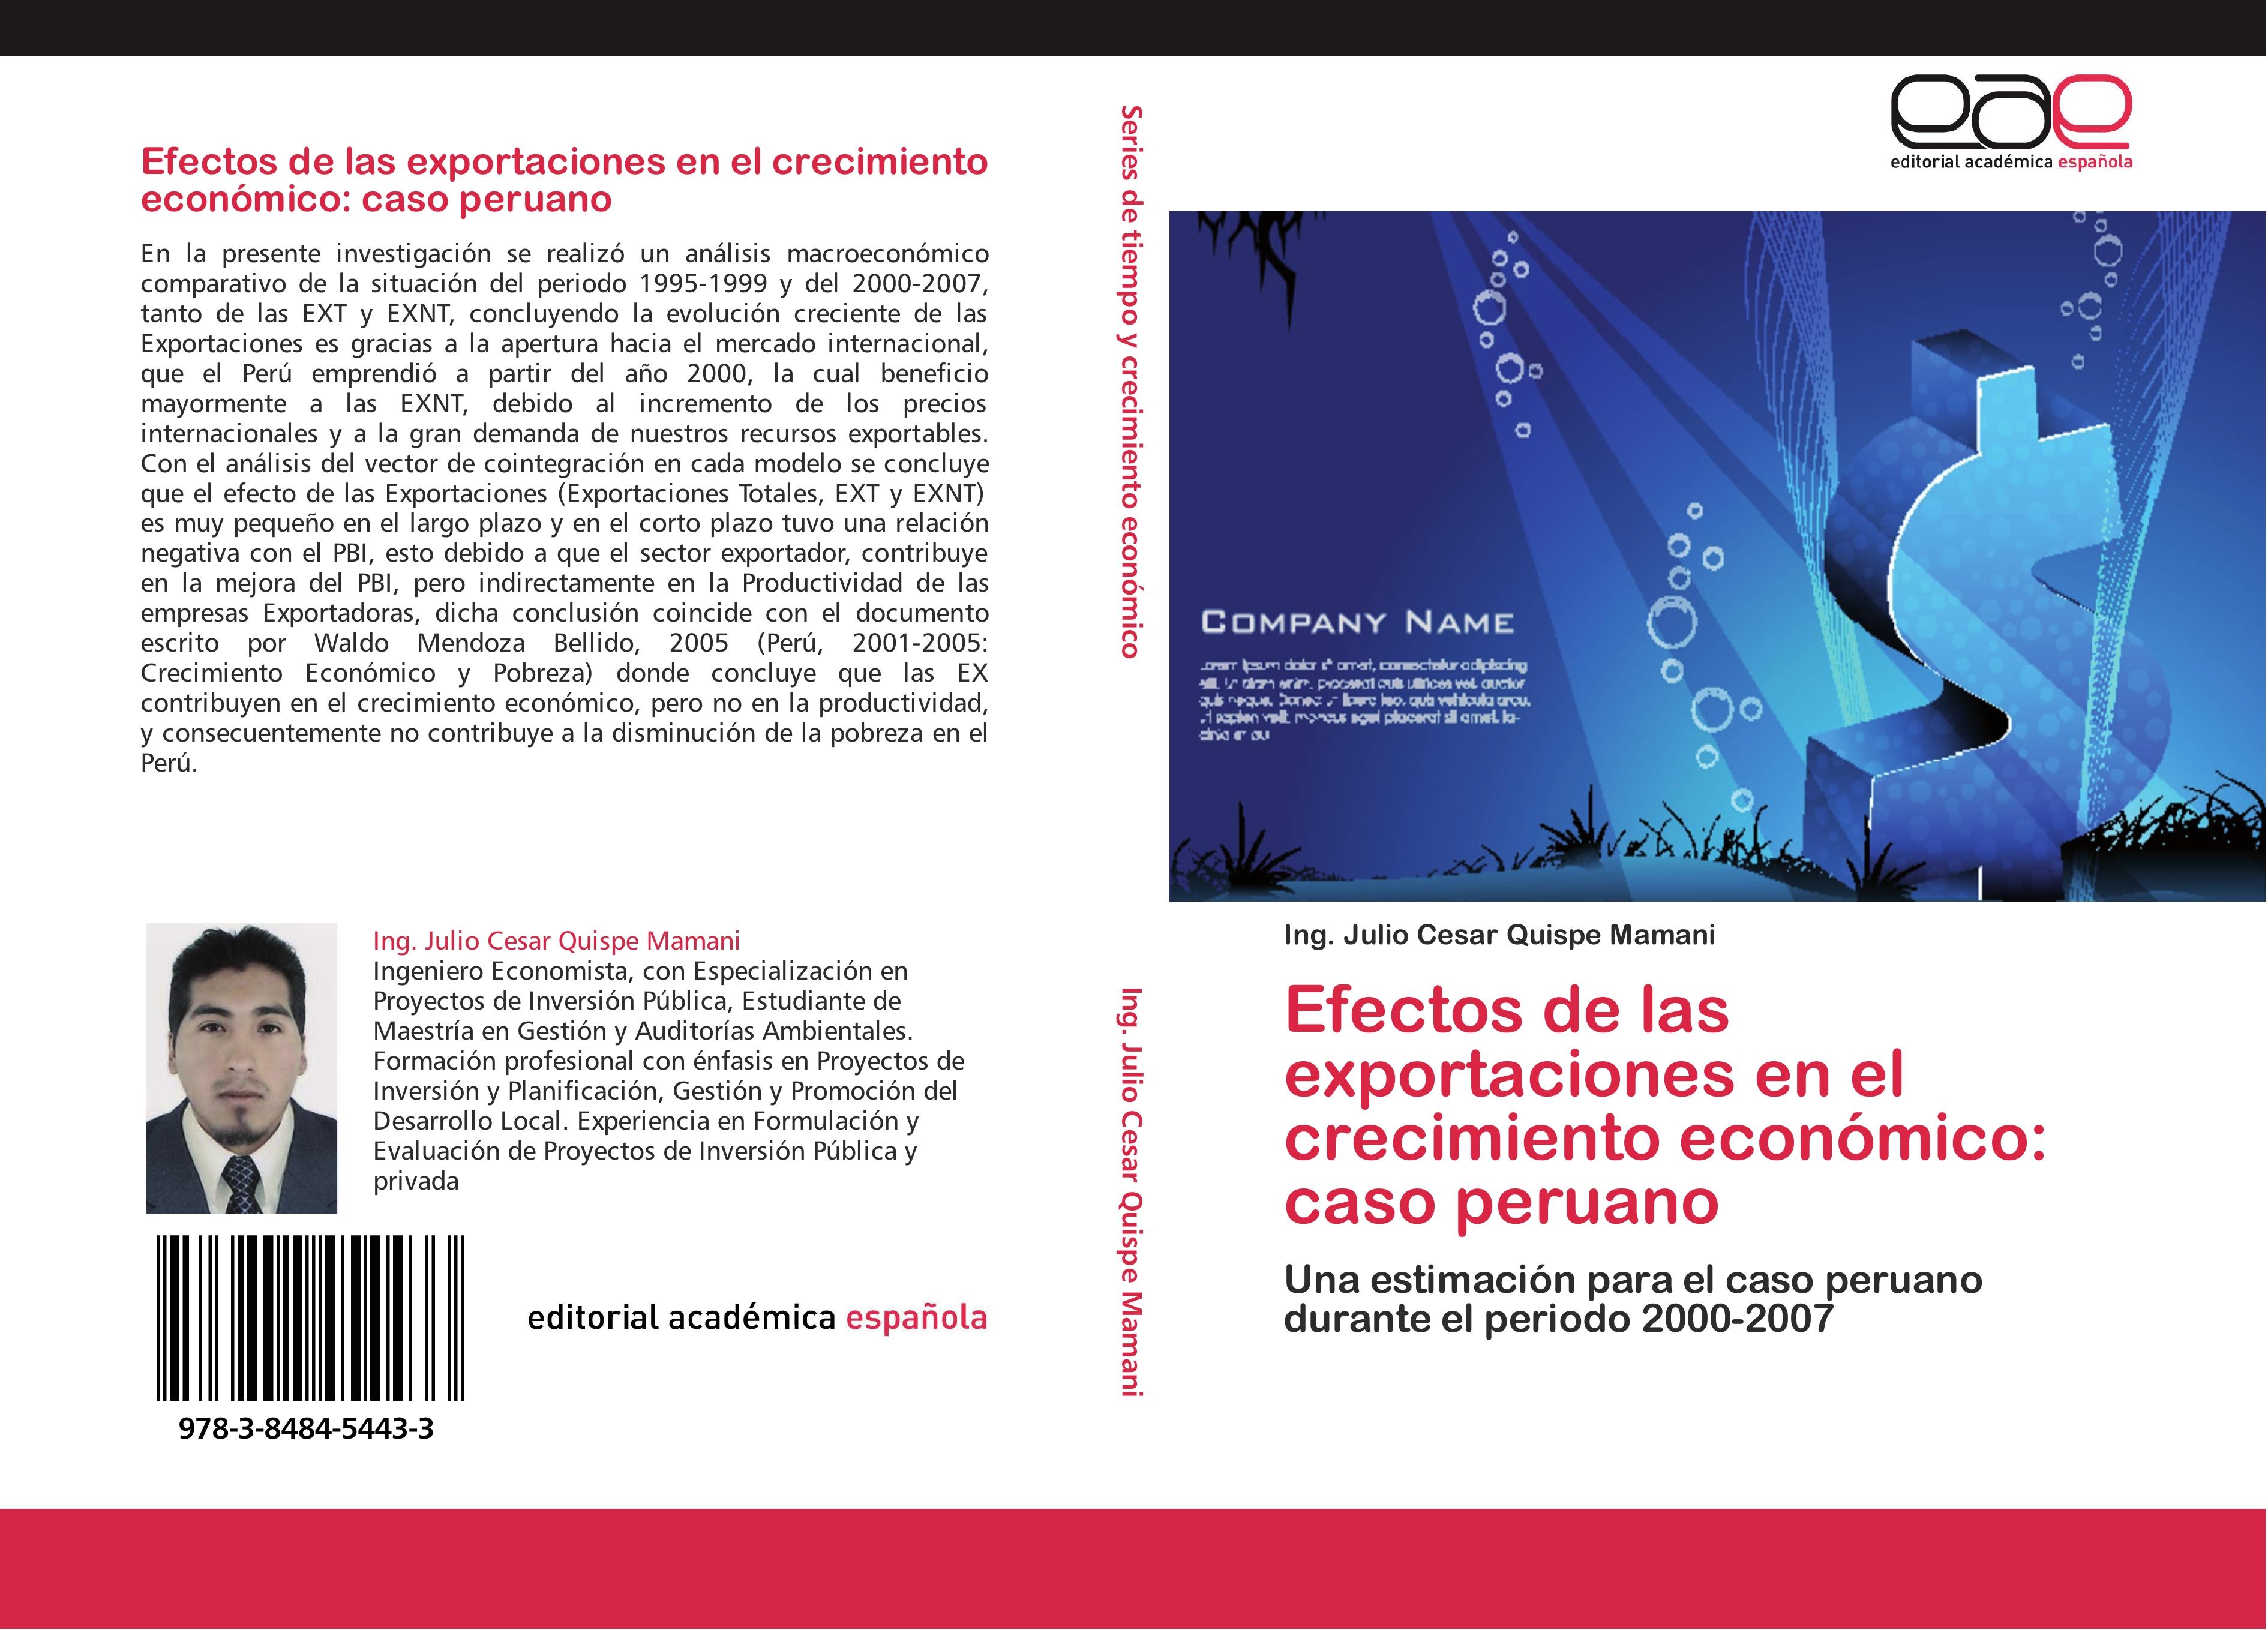 Efectos de las exportaciones en el crecimiento económico: caso peruano - Ing. Julio Cesar Quispe Mamani